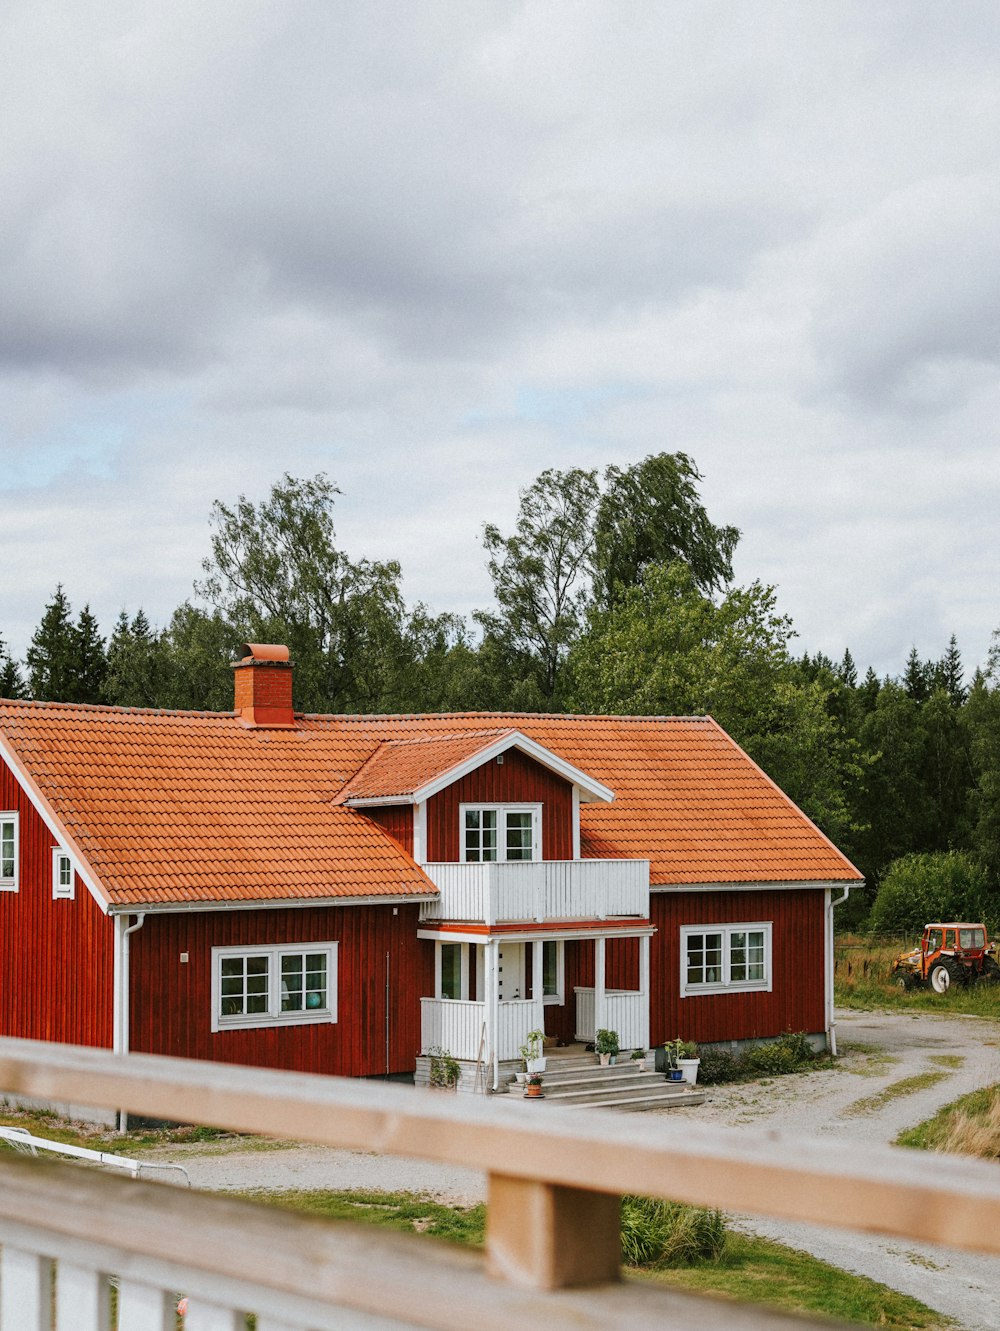 Una casa roja con techo rojo y adornos blancos